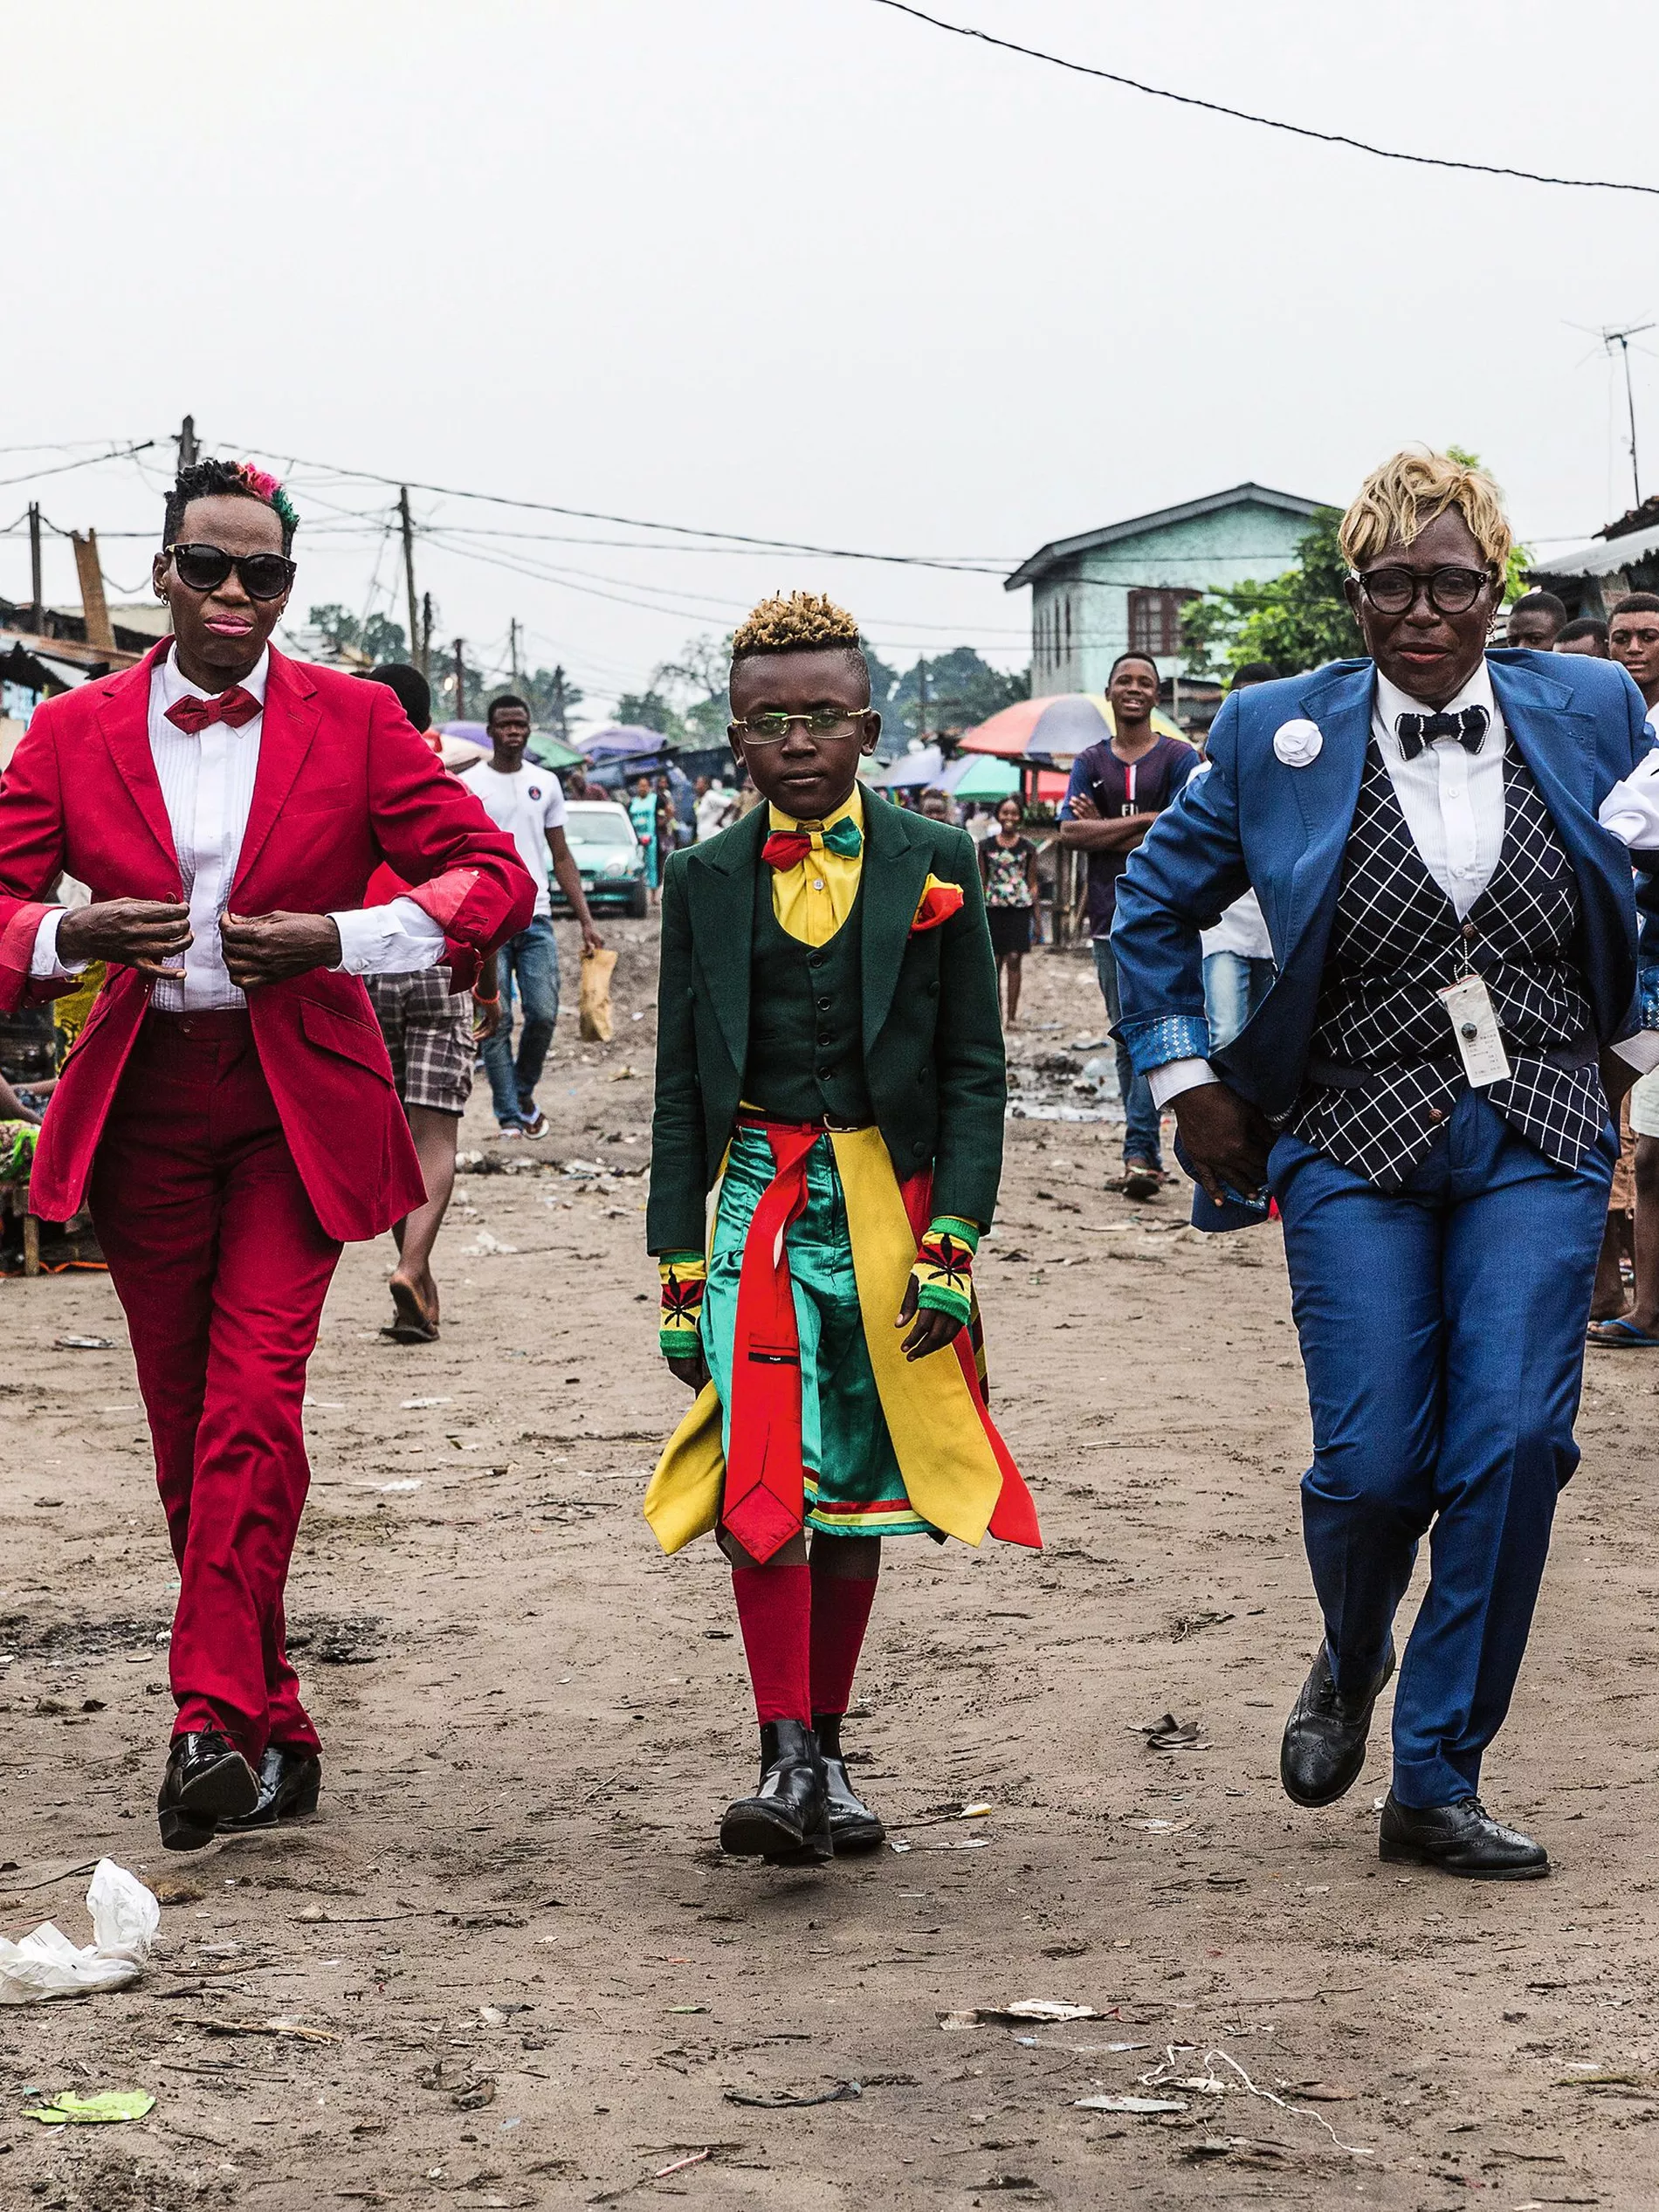 Sapeurs: Ladies and Gentlemen of the Congo - Vogue Scandinavia